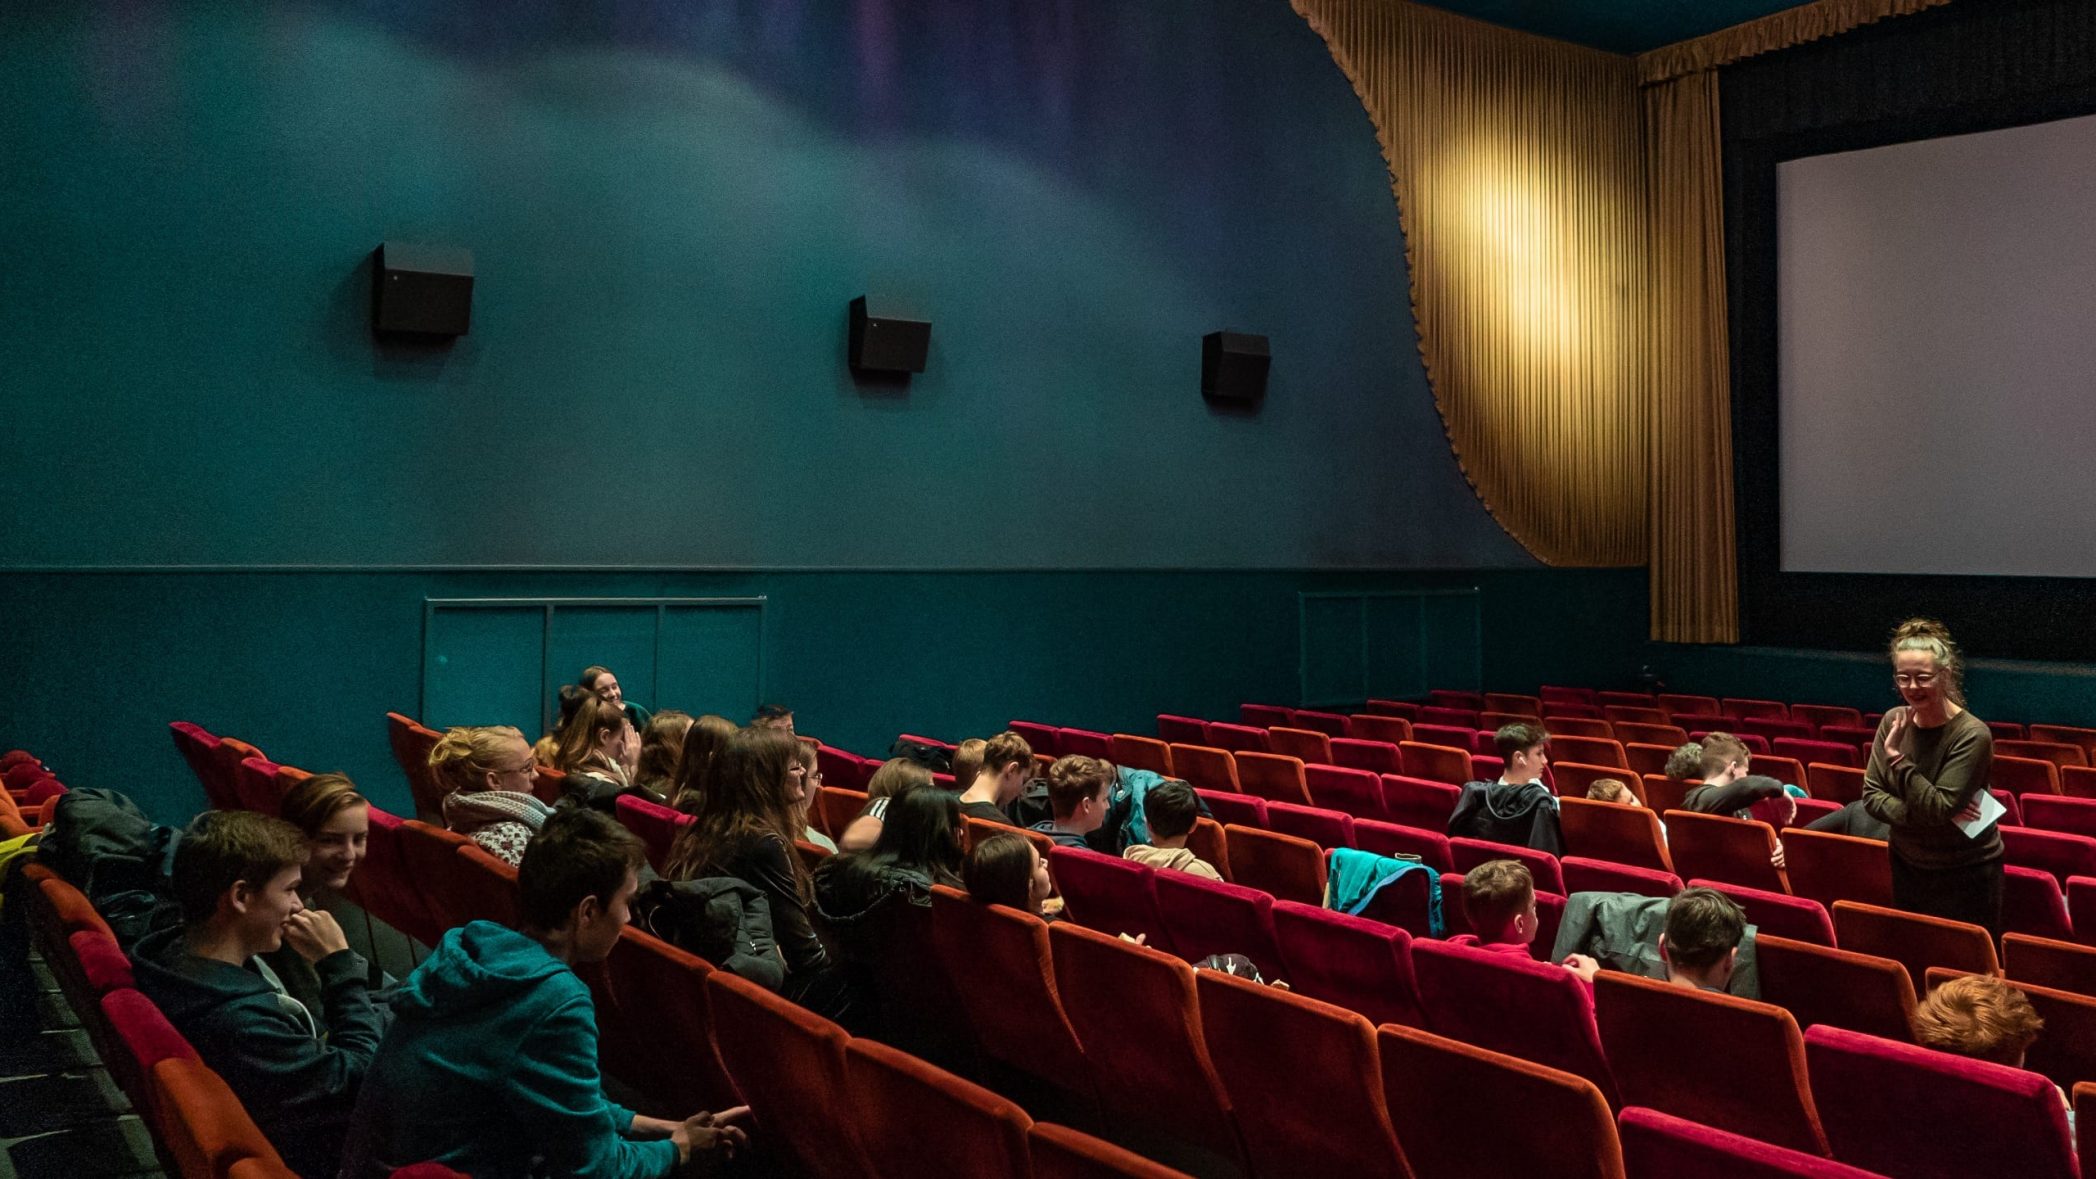 Inneres eines Kinosaals mit roten Kinosesseln und blaugrünen Wänden. Eine weiße Frau mit braunem Langarmshirt, Brille und Dutt steht zwischen den Kinosesseln und etwa 20 Jugendliche, die verteilt in den Sesseln sitzen, teilweise zuhörend, teilweise miteinander beschäftigt, etwas vor.